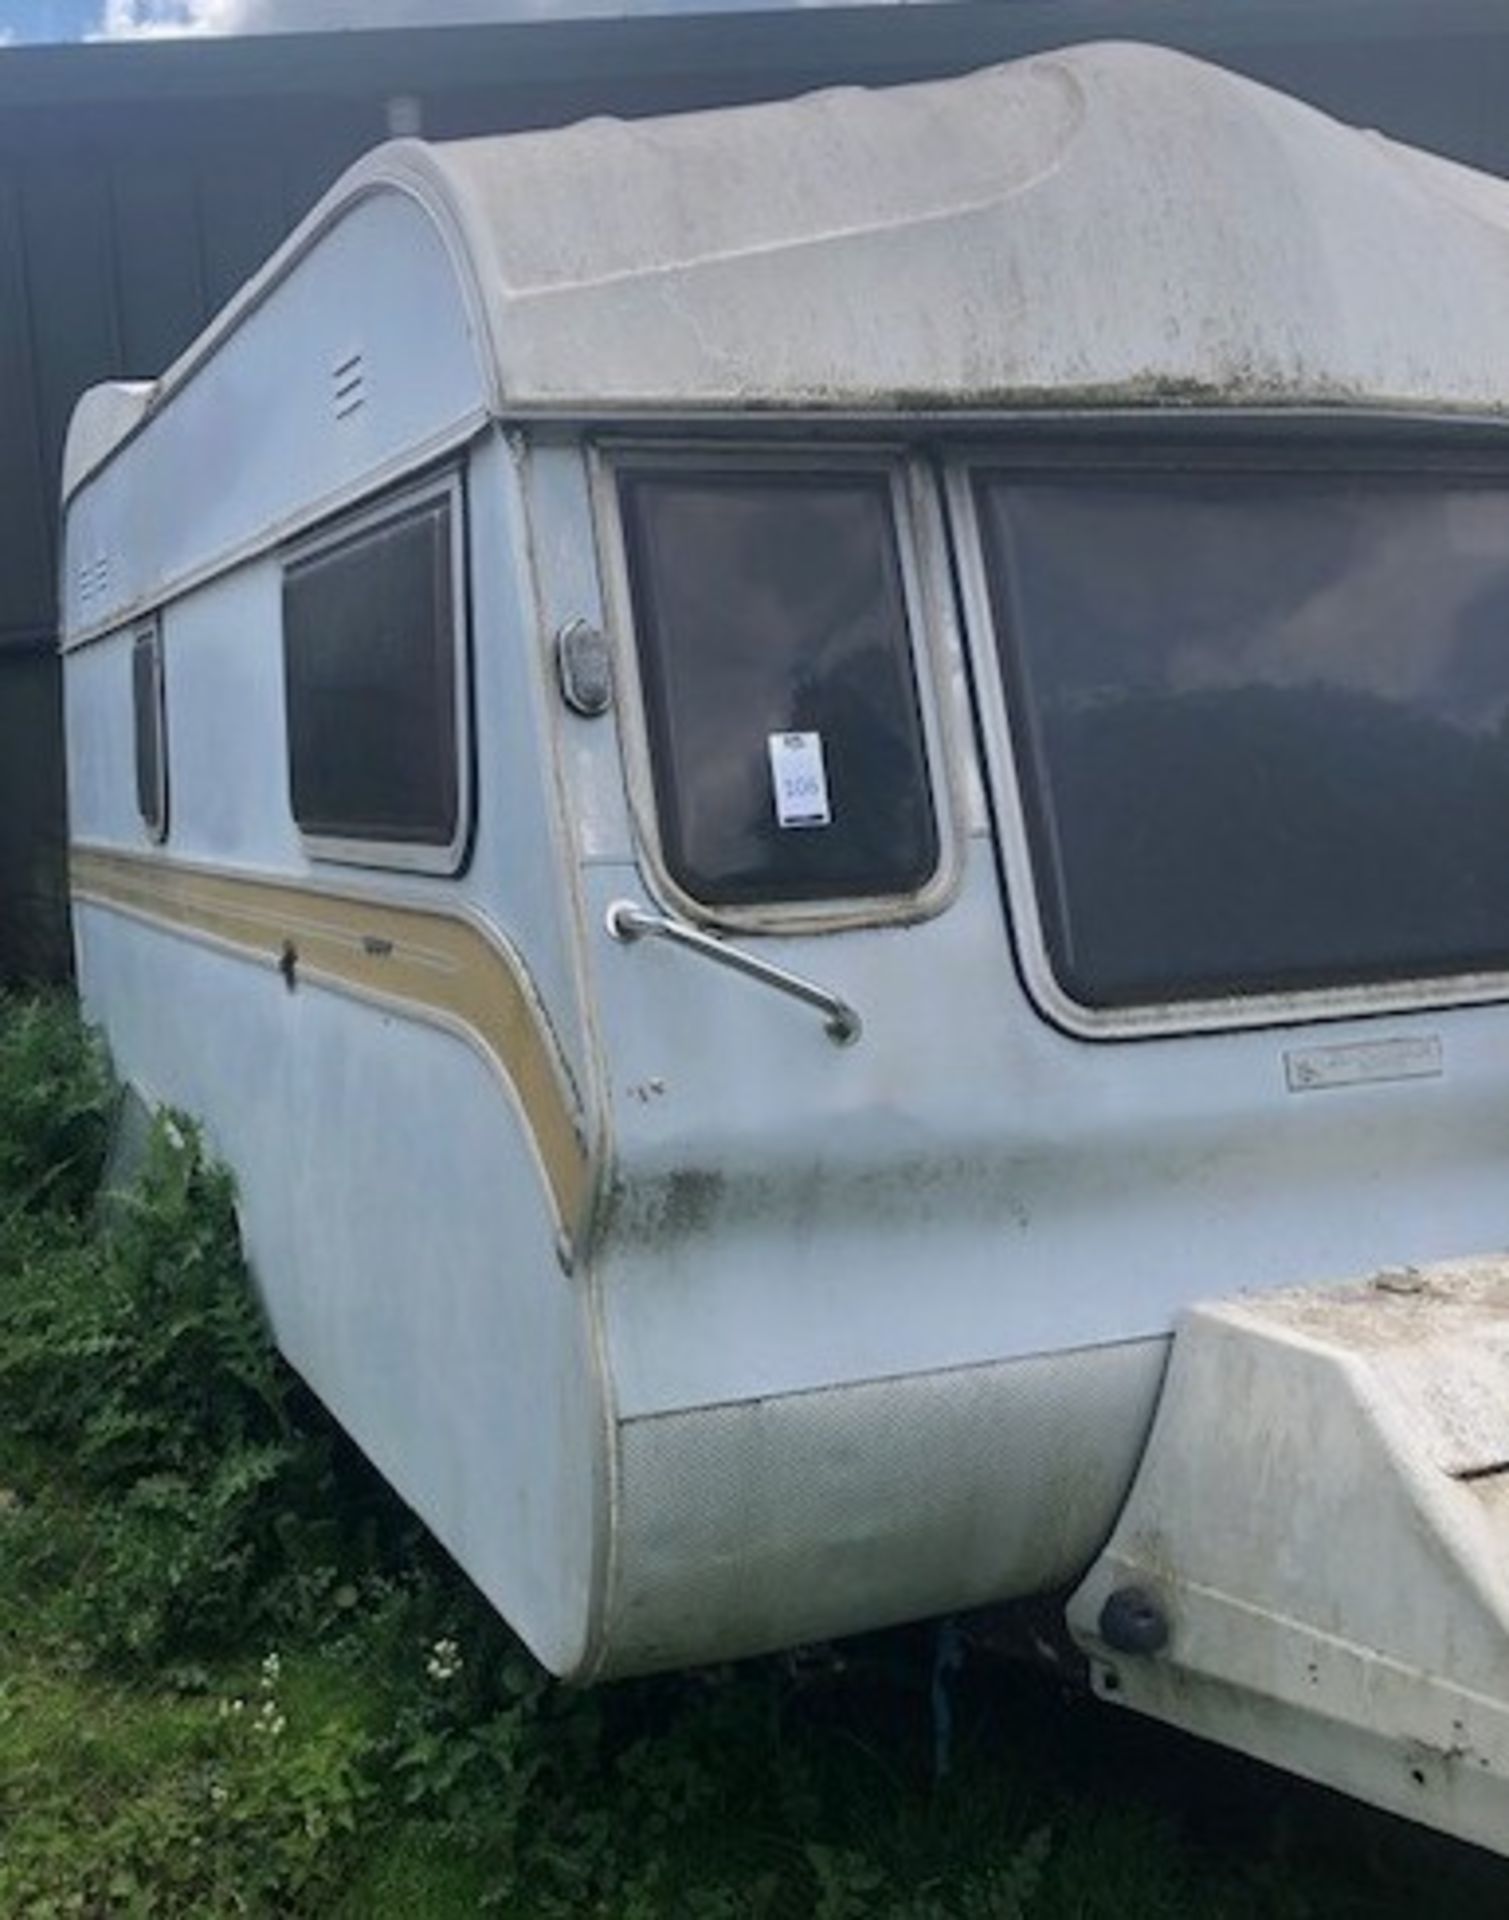 Avondale Classic Caravan for Restoration (Location Bognor Regis) (IMPORTANT NOTE: The Caravan is Not